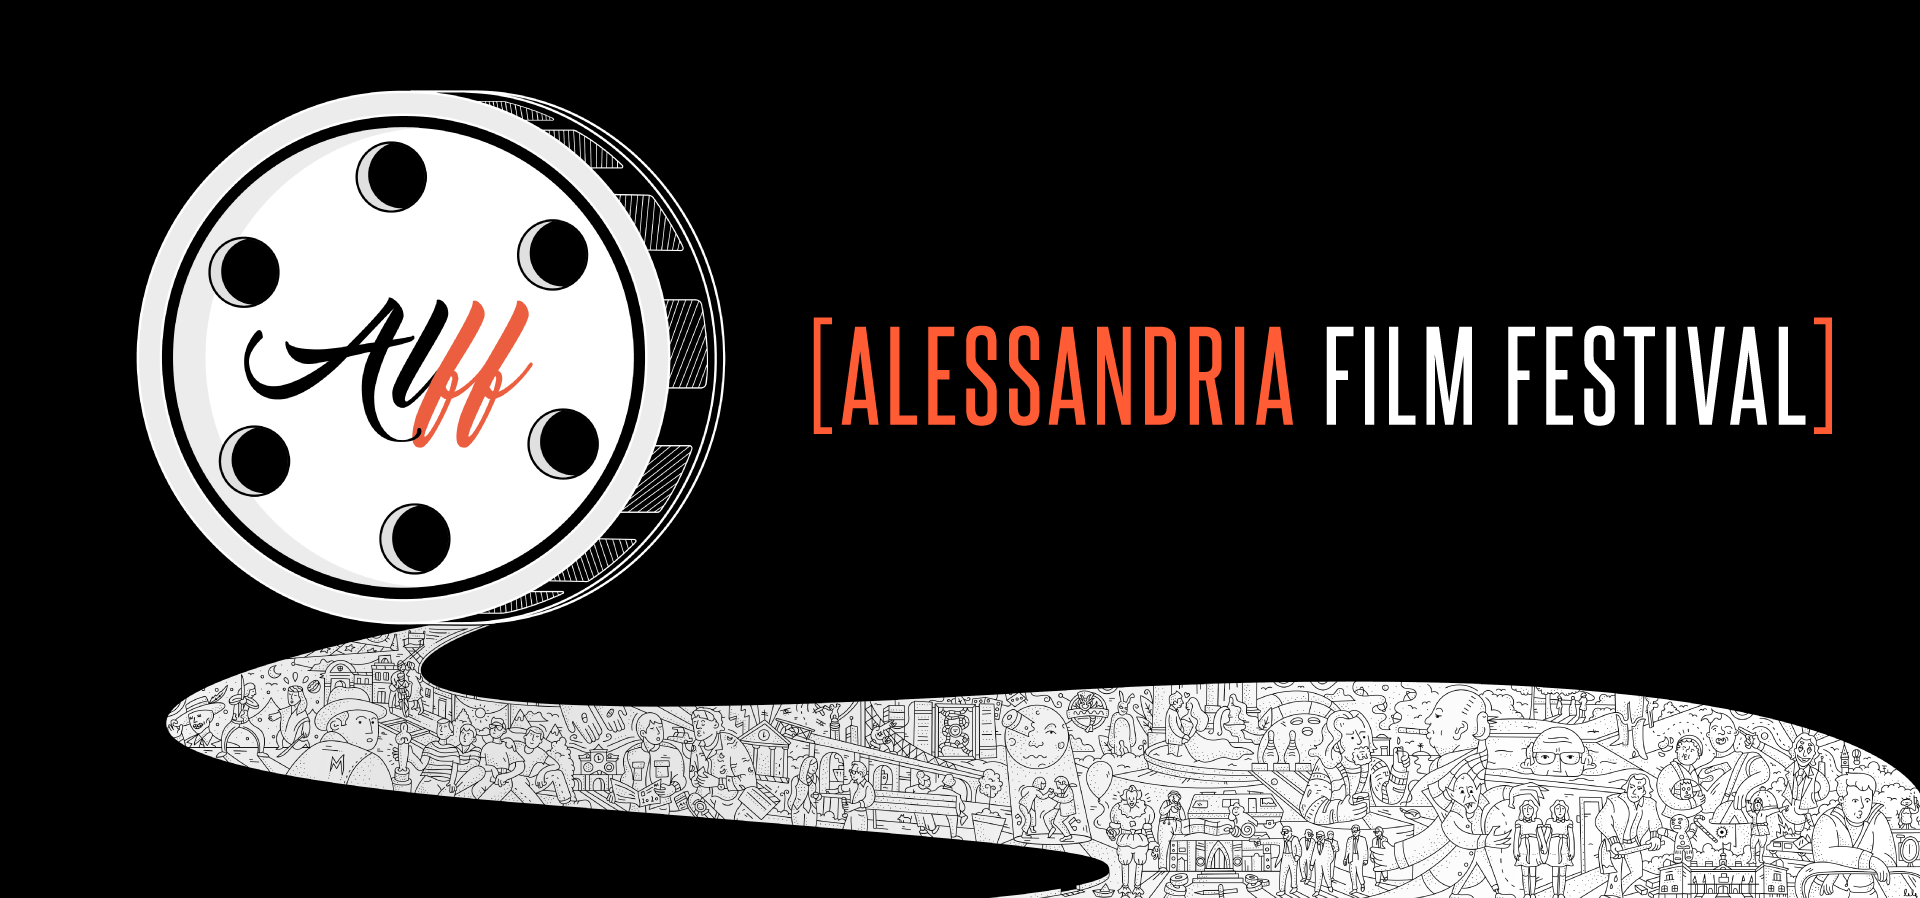 Alessandria Film Festival pronto a ripartire: Pietro Lombardi nuovo direttore artistico